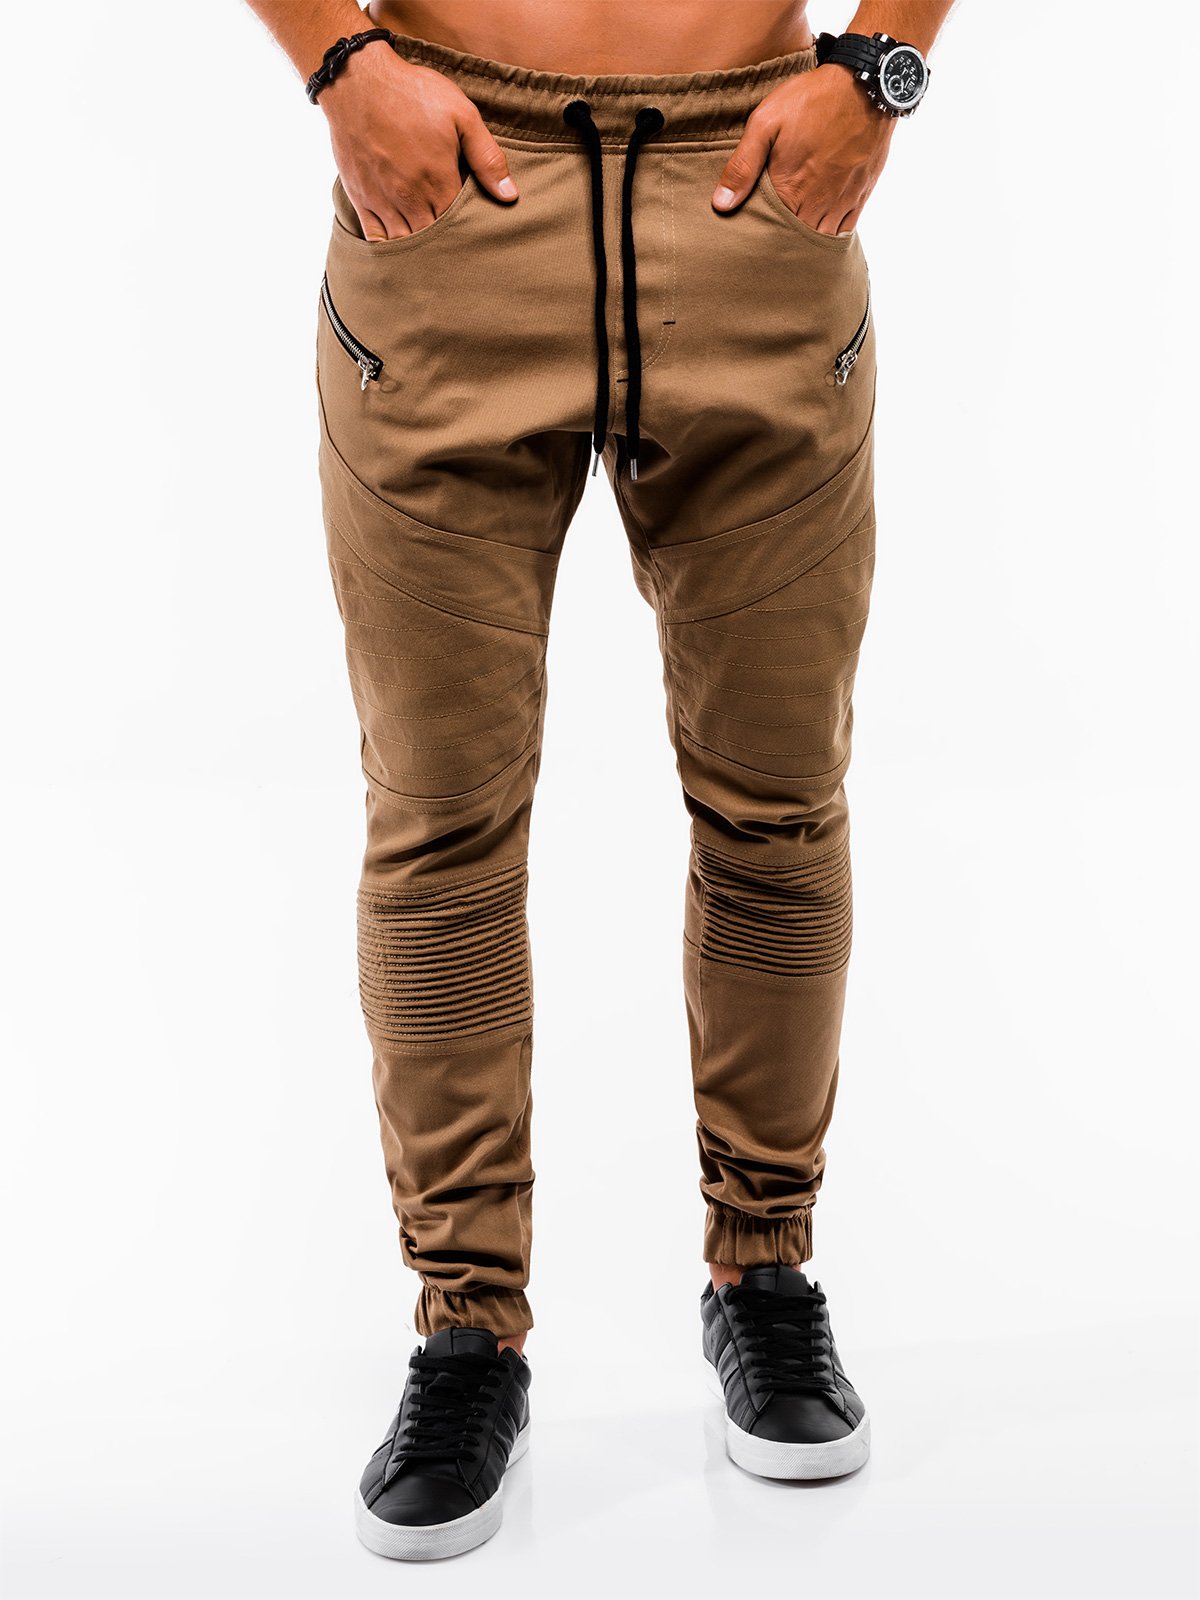 Men's pants joggers P709 - camel | MODONE wholesale - Clothing For Men